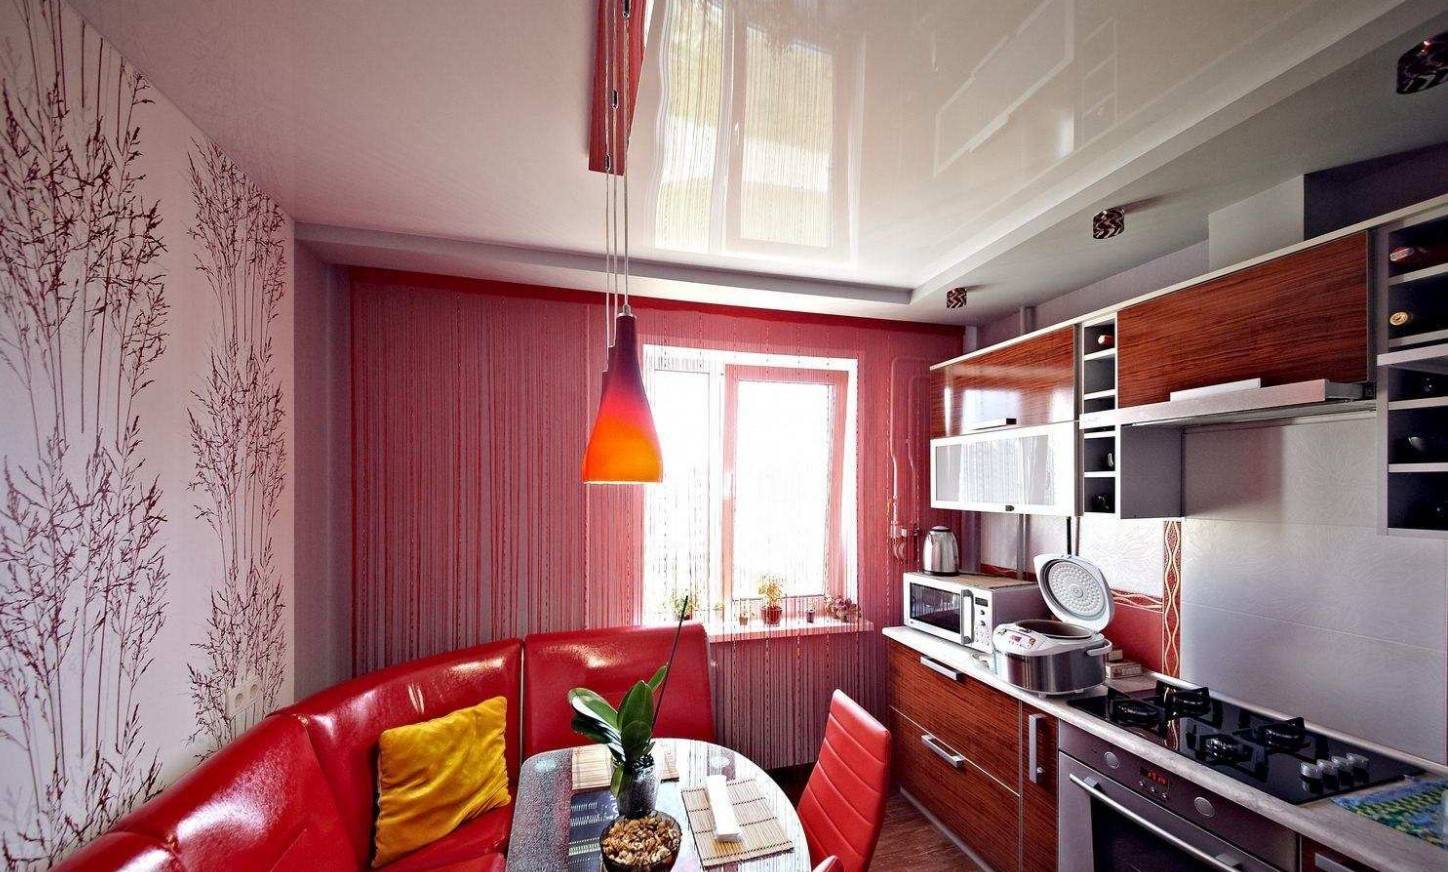 129 реальных фото интерьера кухни 9 кв м + советы дизайнера